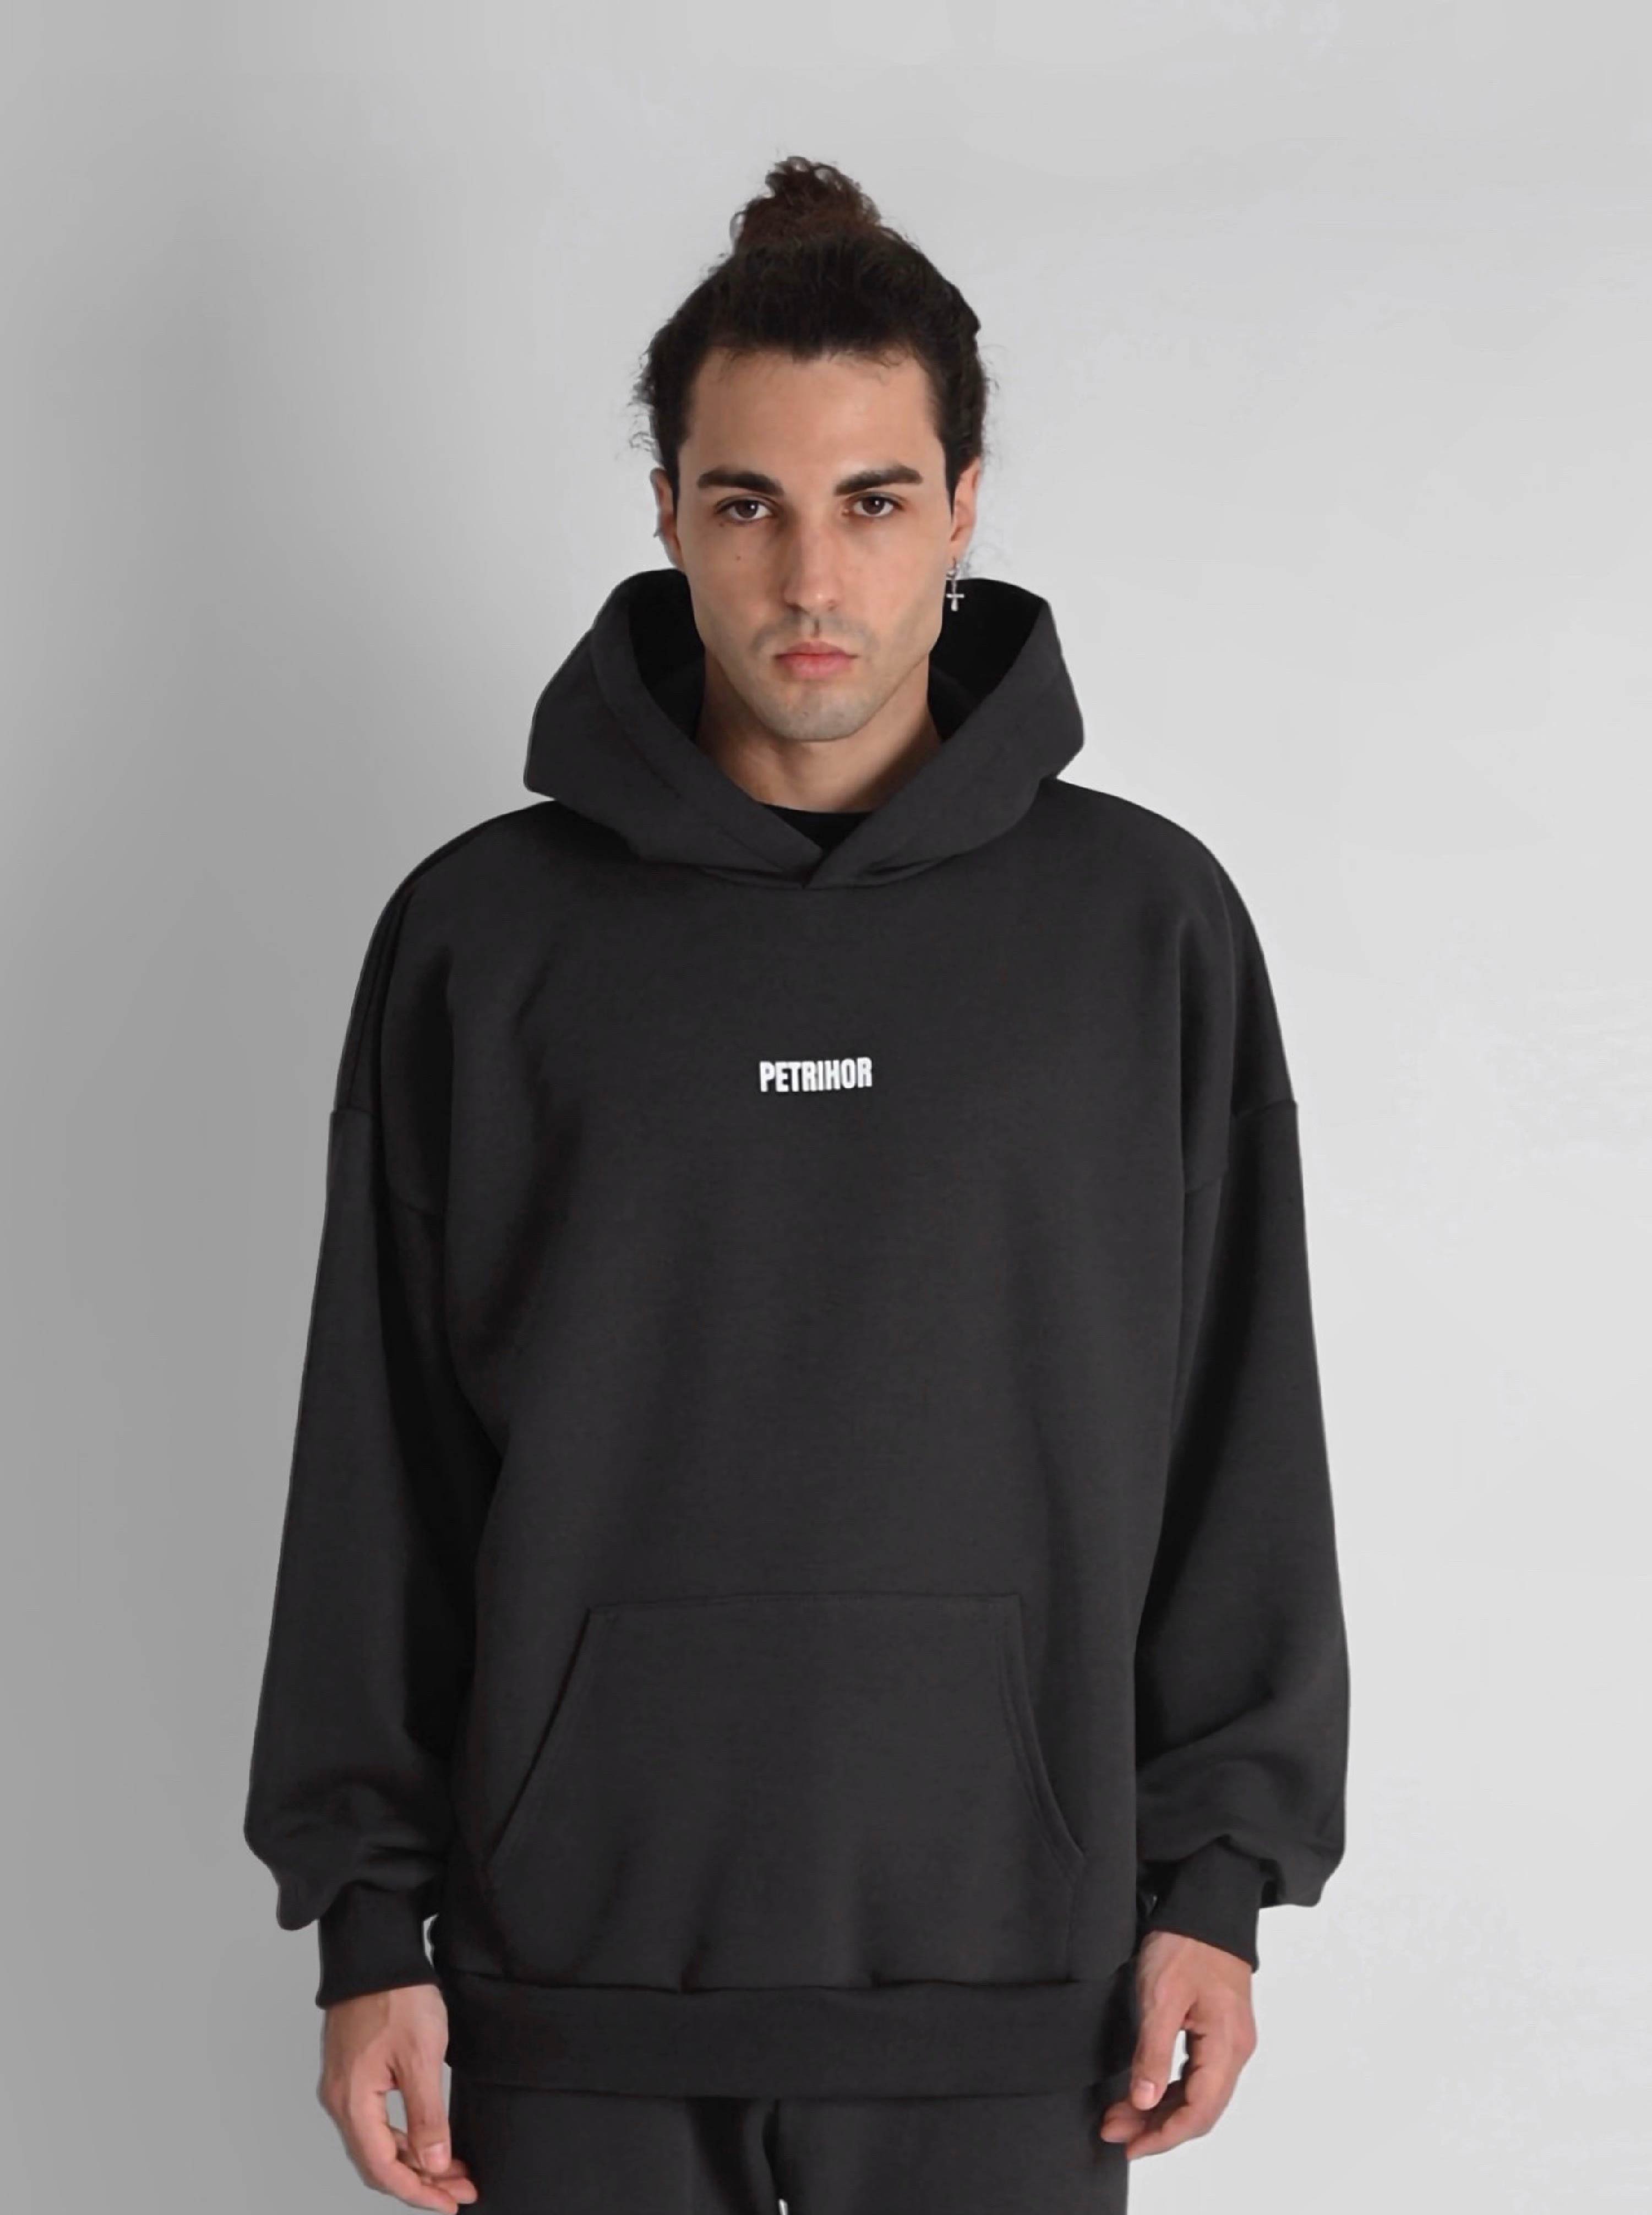 TRADEMARK'' hoodie in onyx color – PETRIHOR